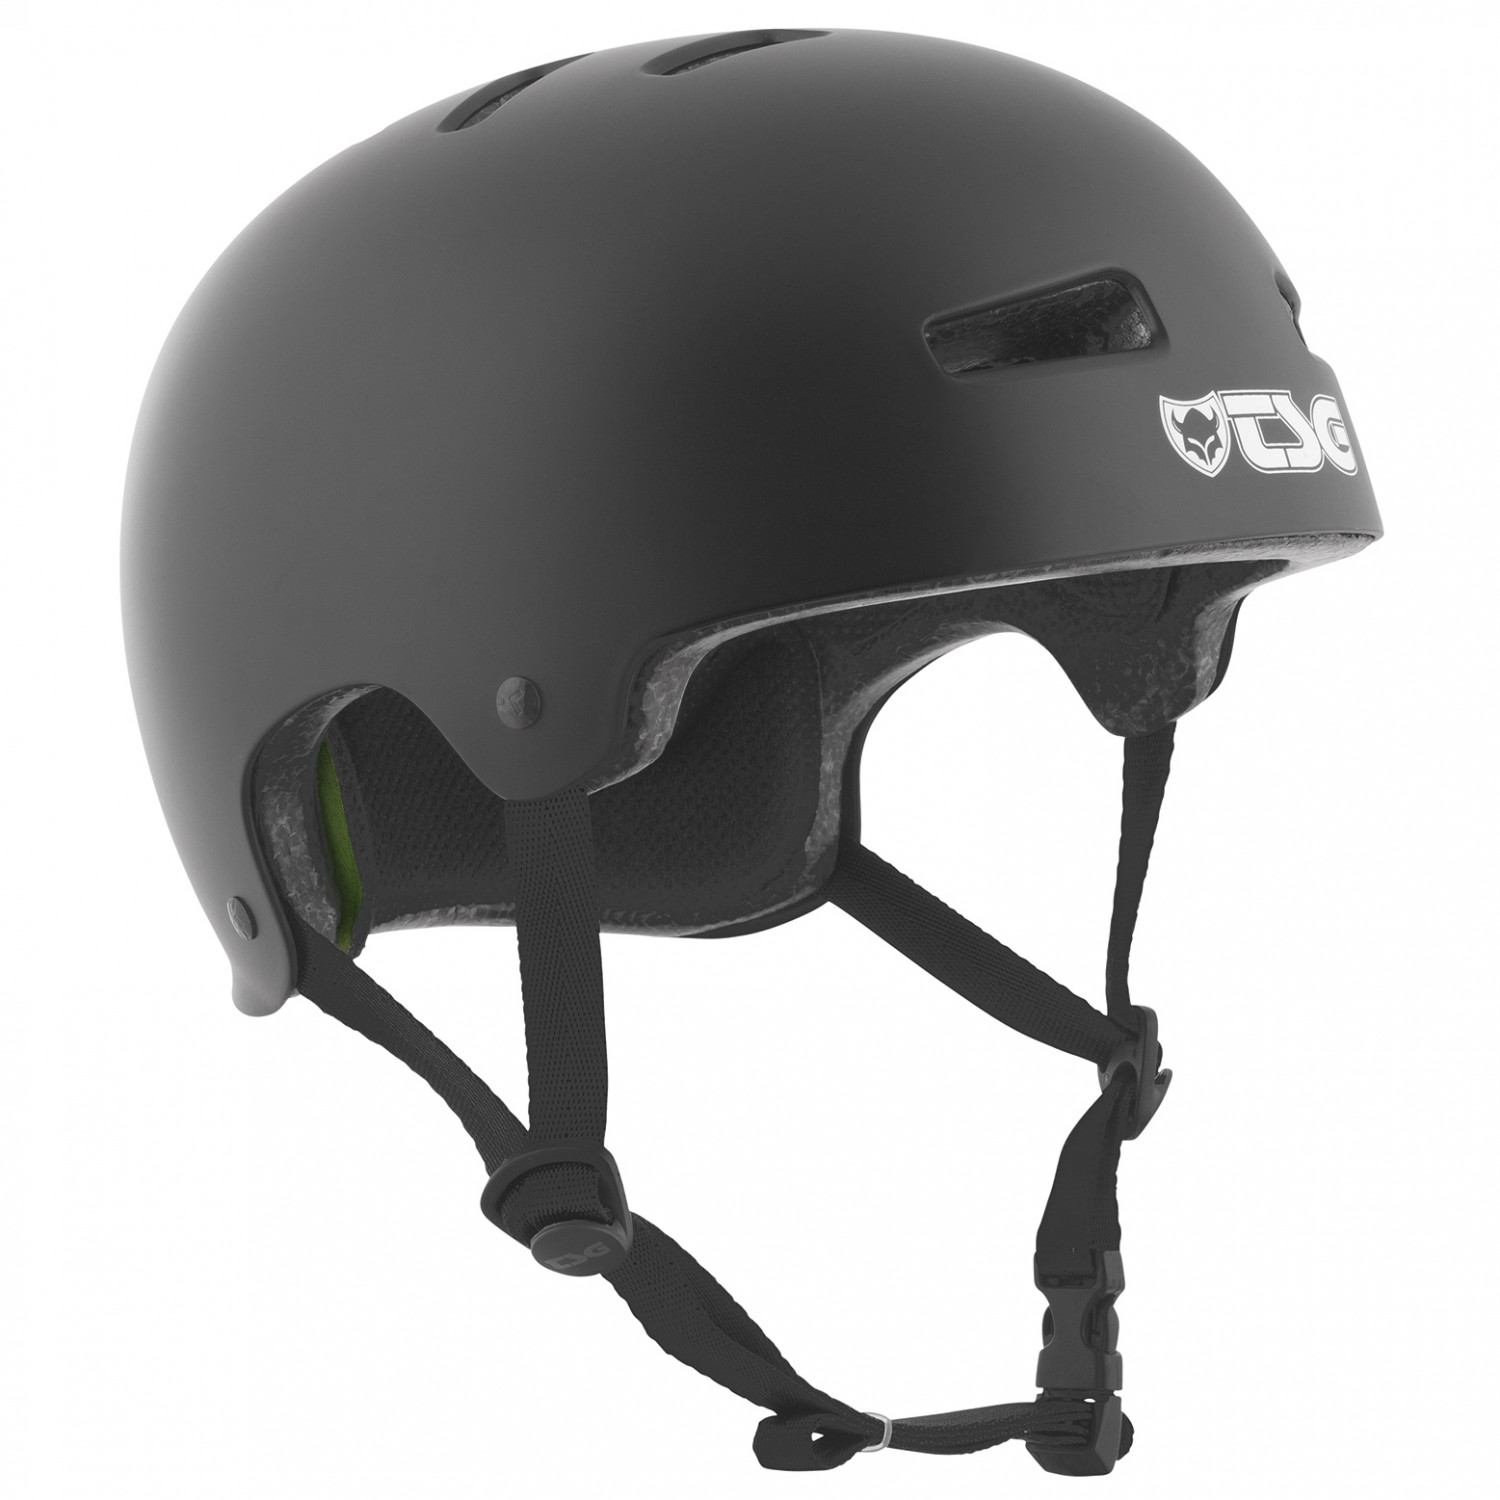 Велосипедный шлем Tsg Evolution Solid Color, цвет Satin Black